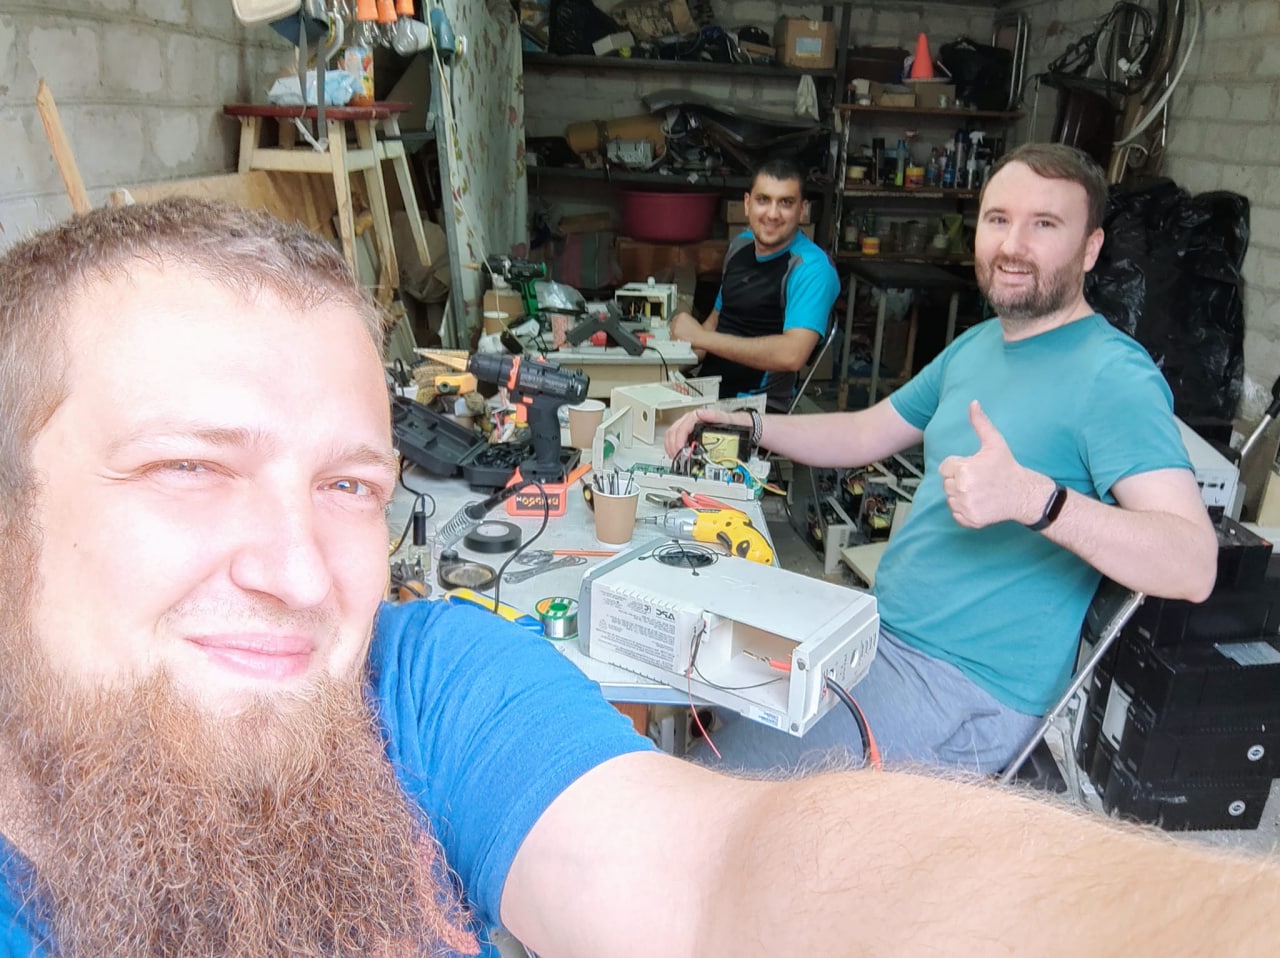 Пока в мастерской работает три человека (слева направо) Игорь Ревнюк, Олег Киршнер, Дмитрий Сандуленко. Фото: https://www.facebook.com/groups/1103220730617499